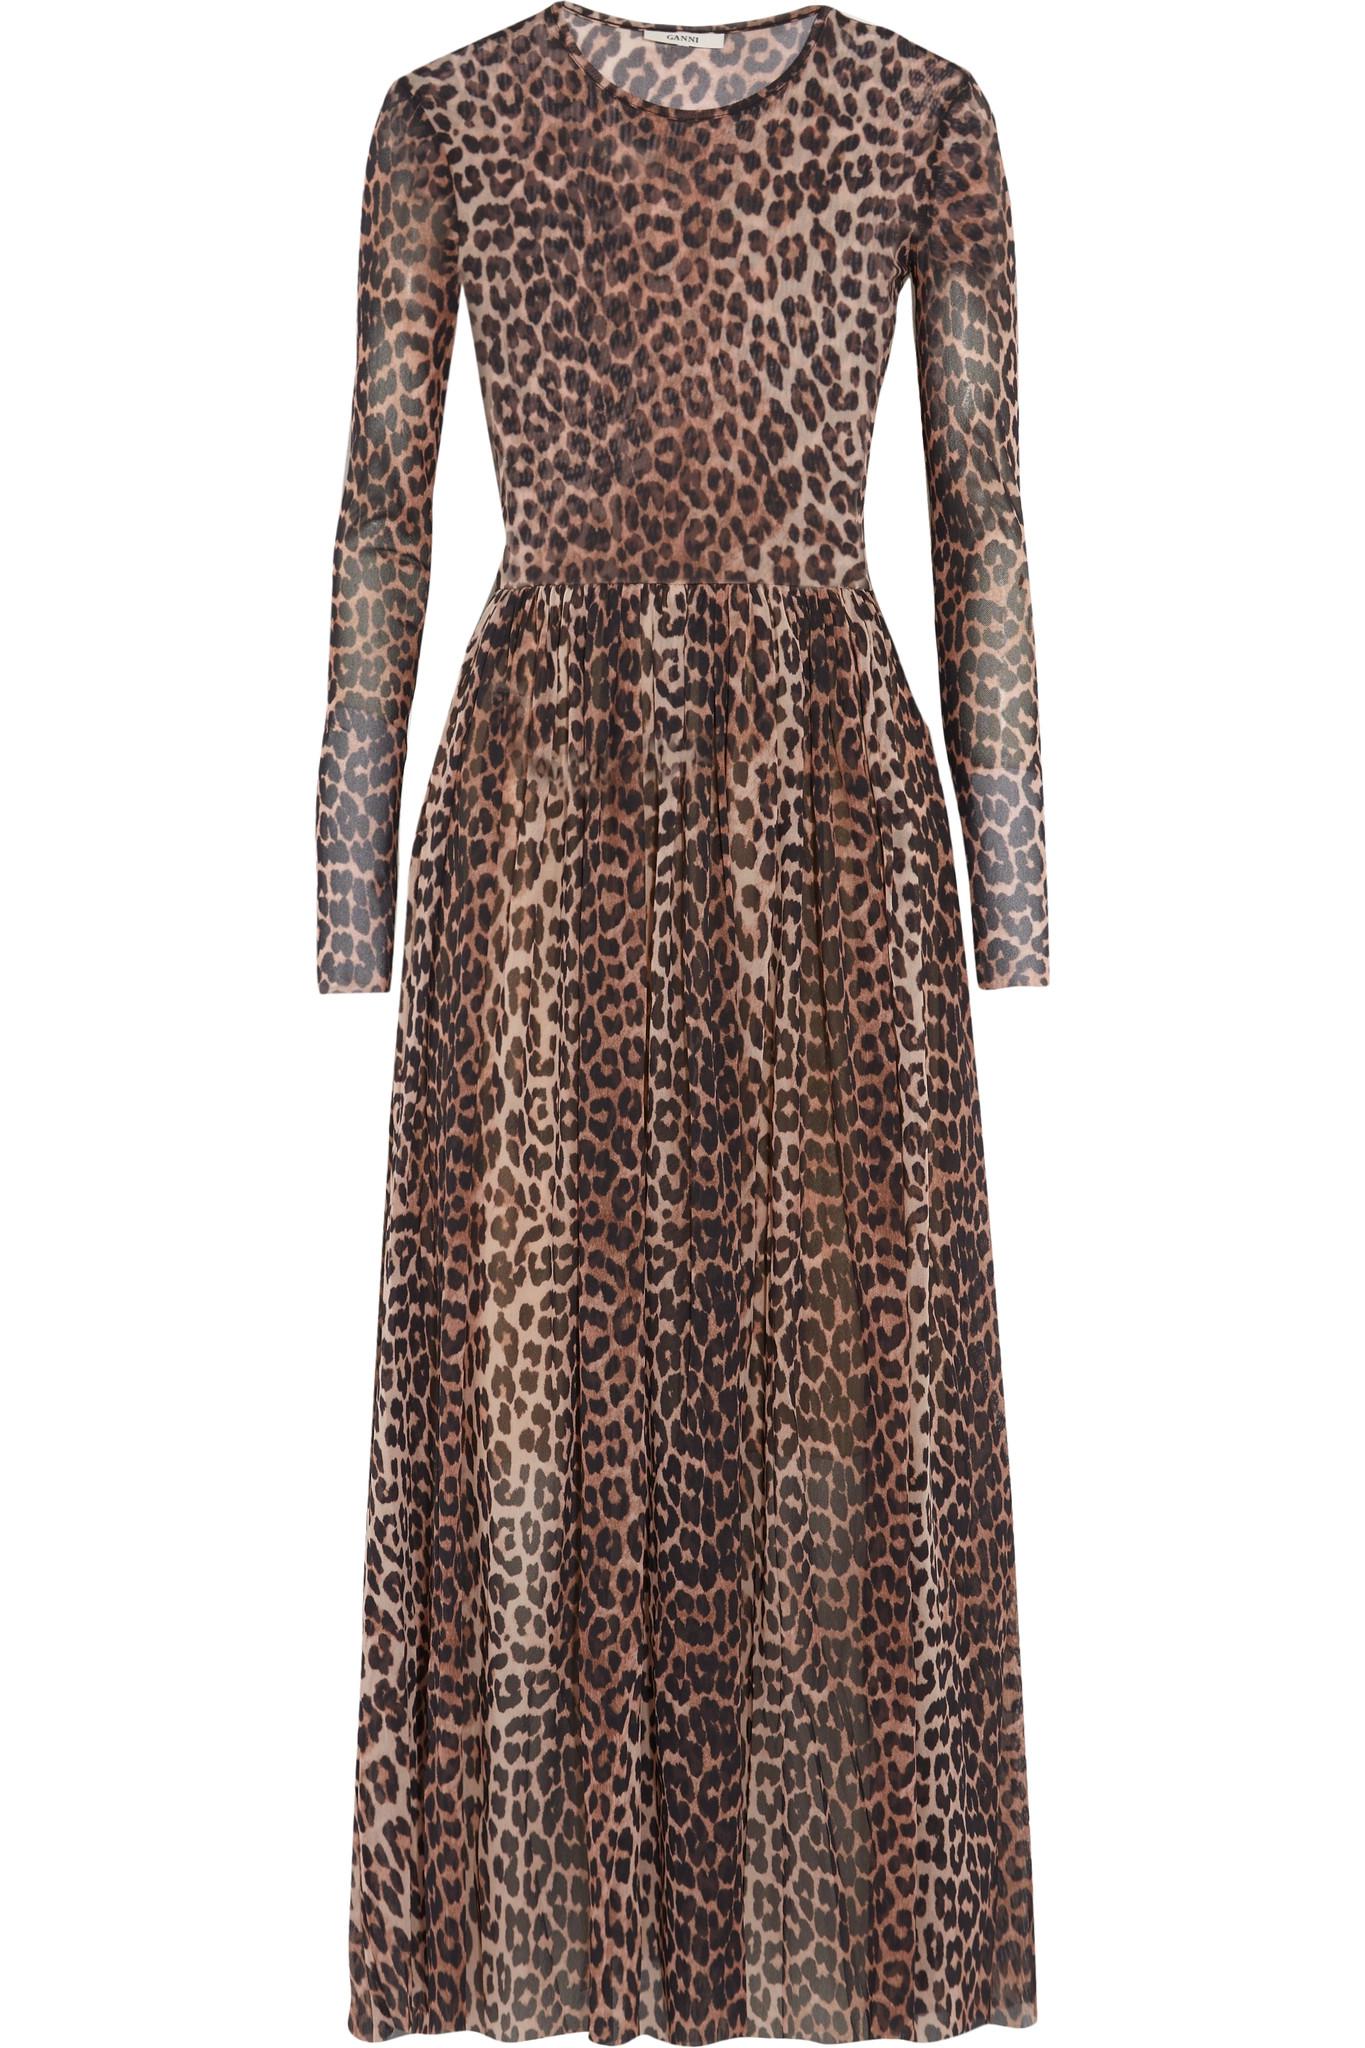 Lyst - Ganni Tilden Leopard-print Stretch-mesh Dress in Brown